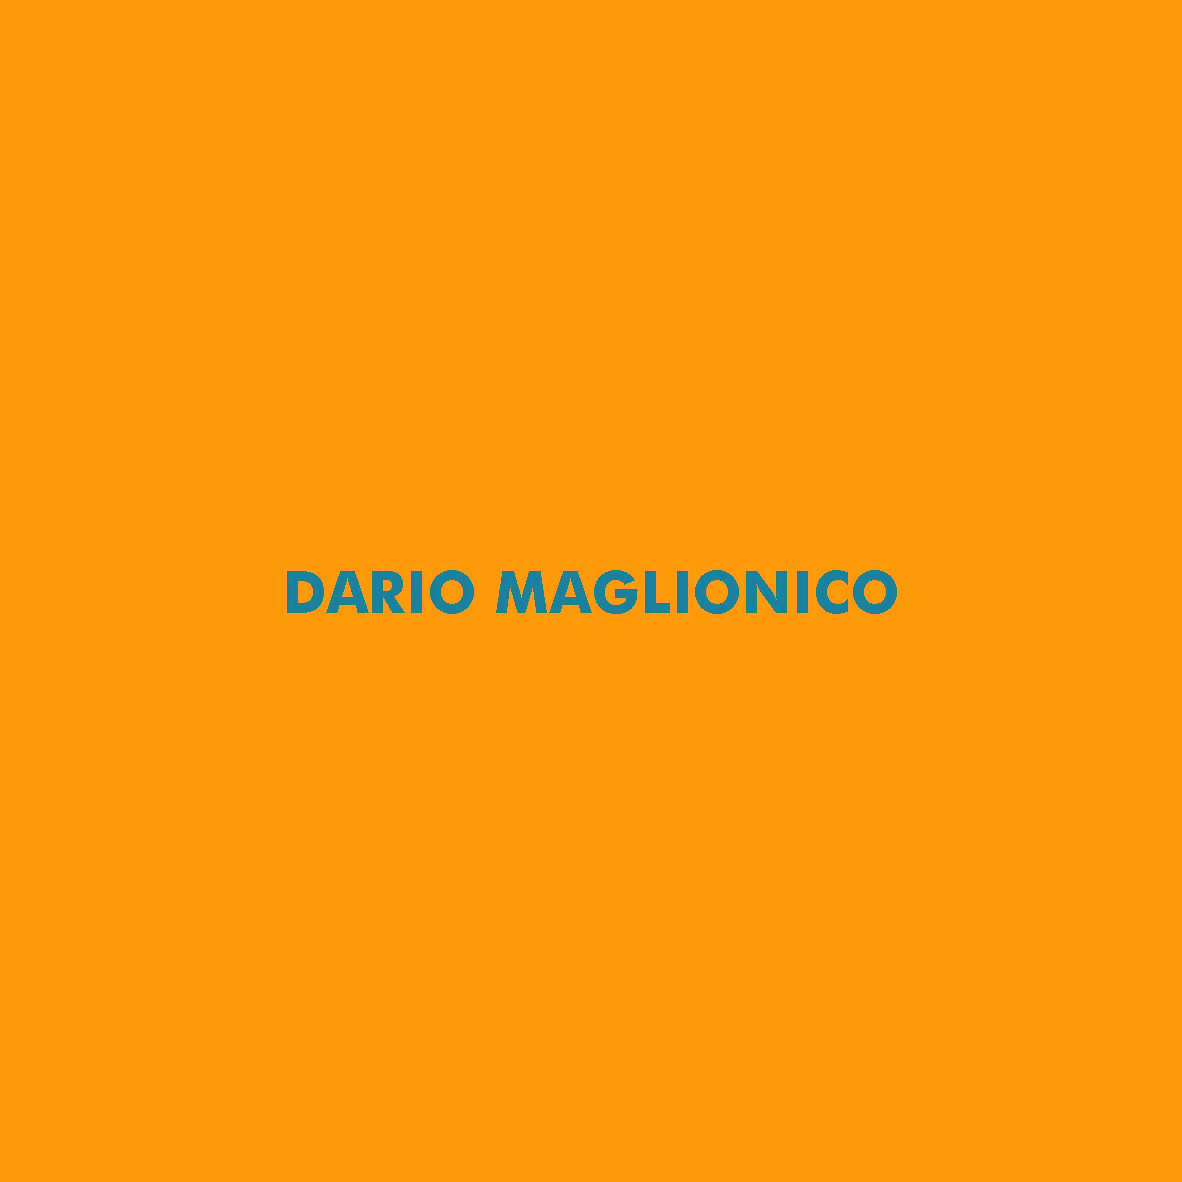 Dario Maglionico – FLOATING SPACE_exhibition catalog_Pagina_01